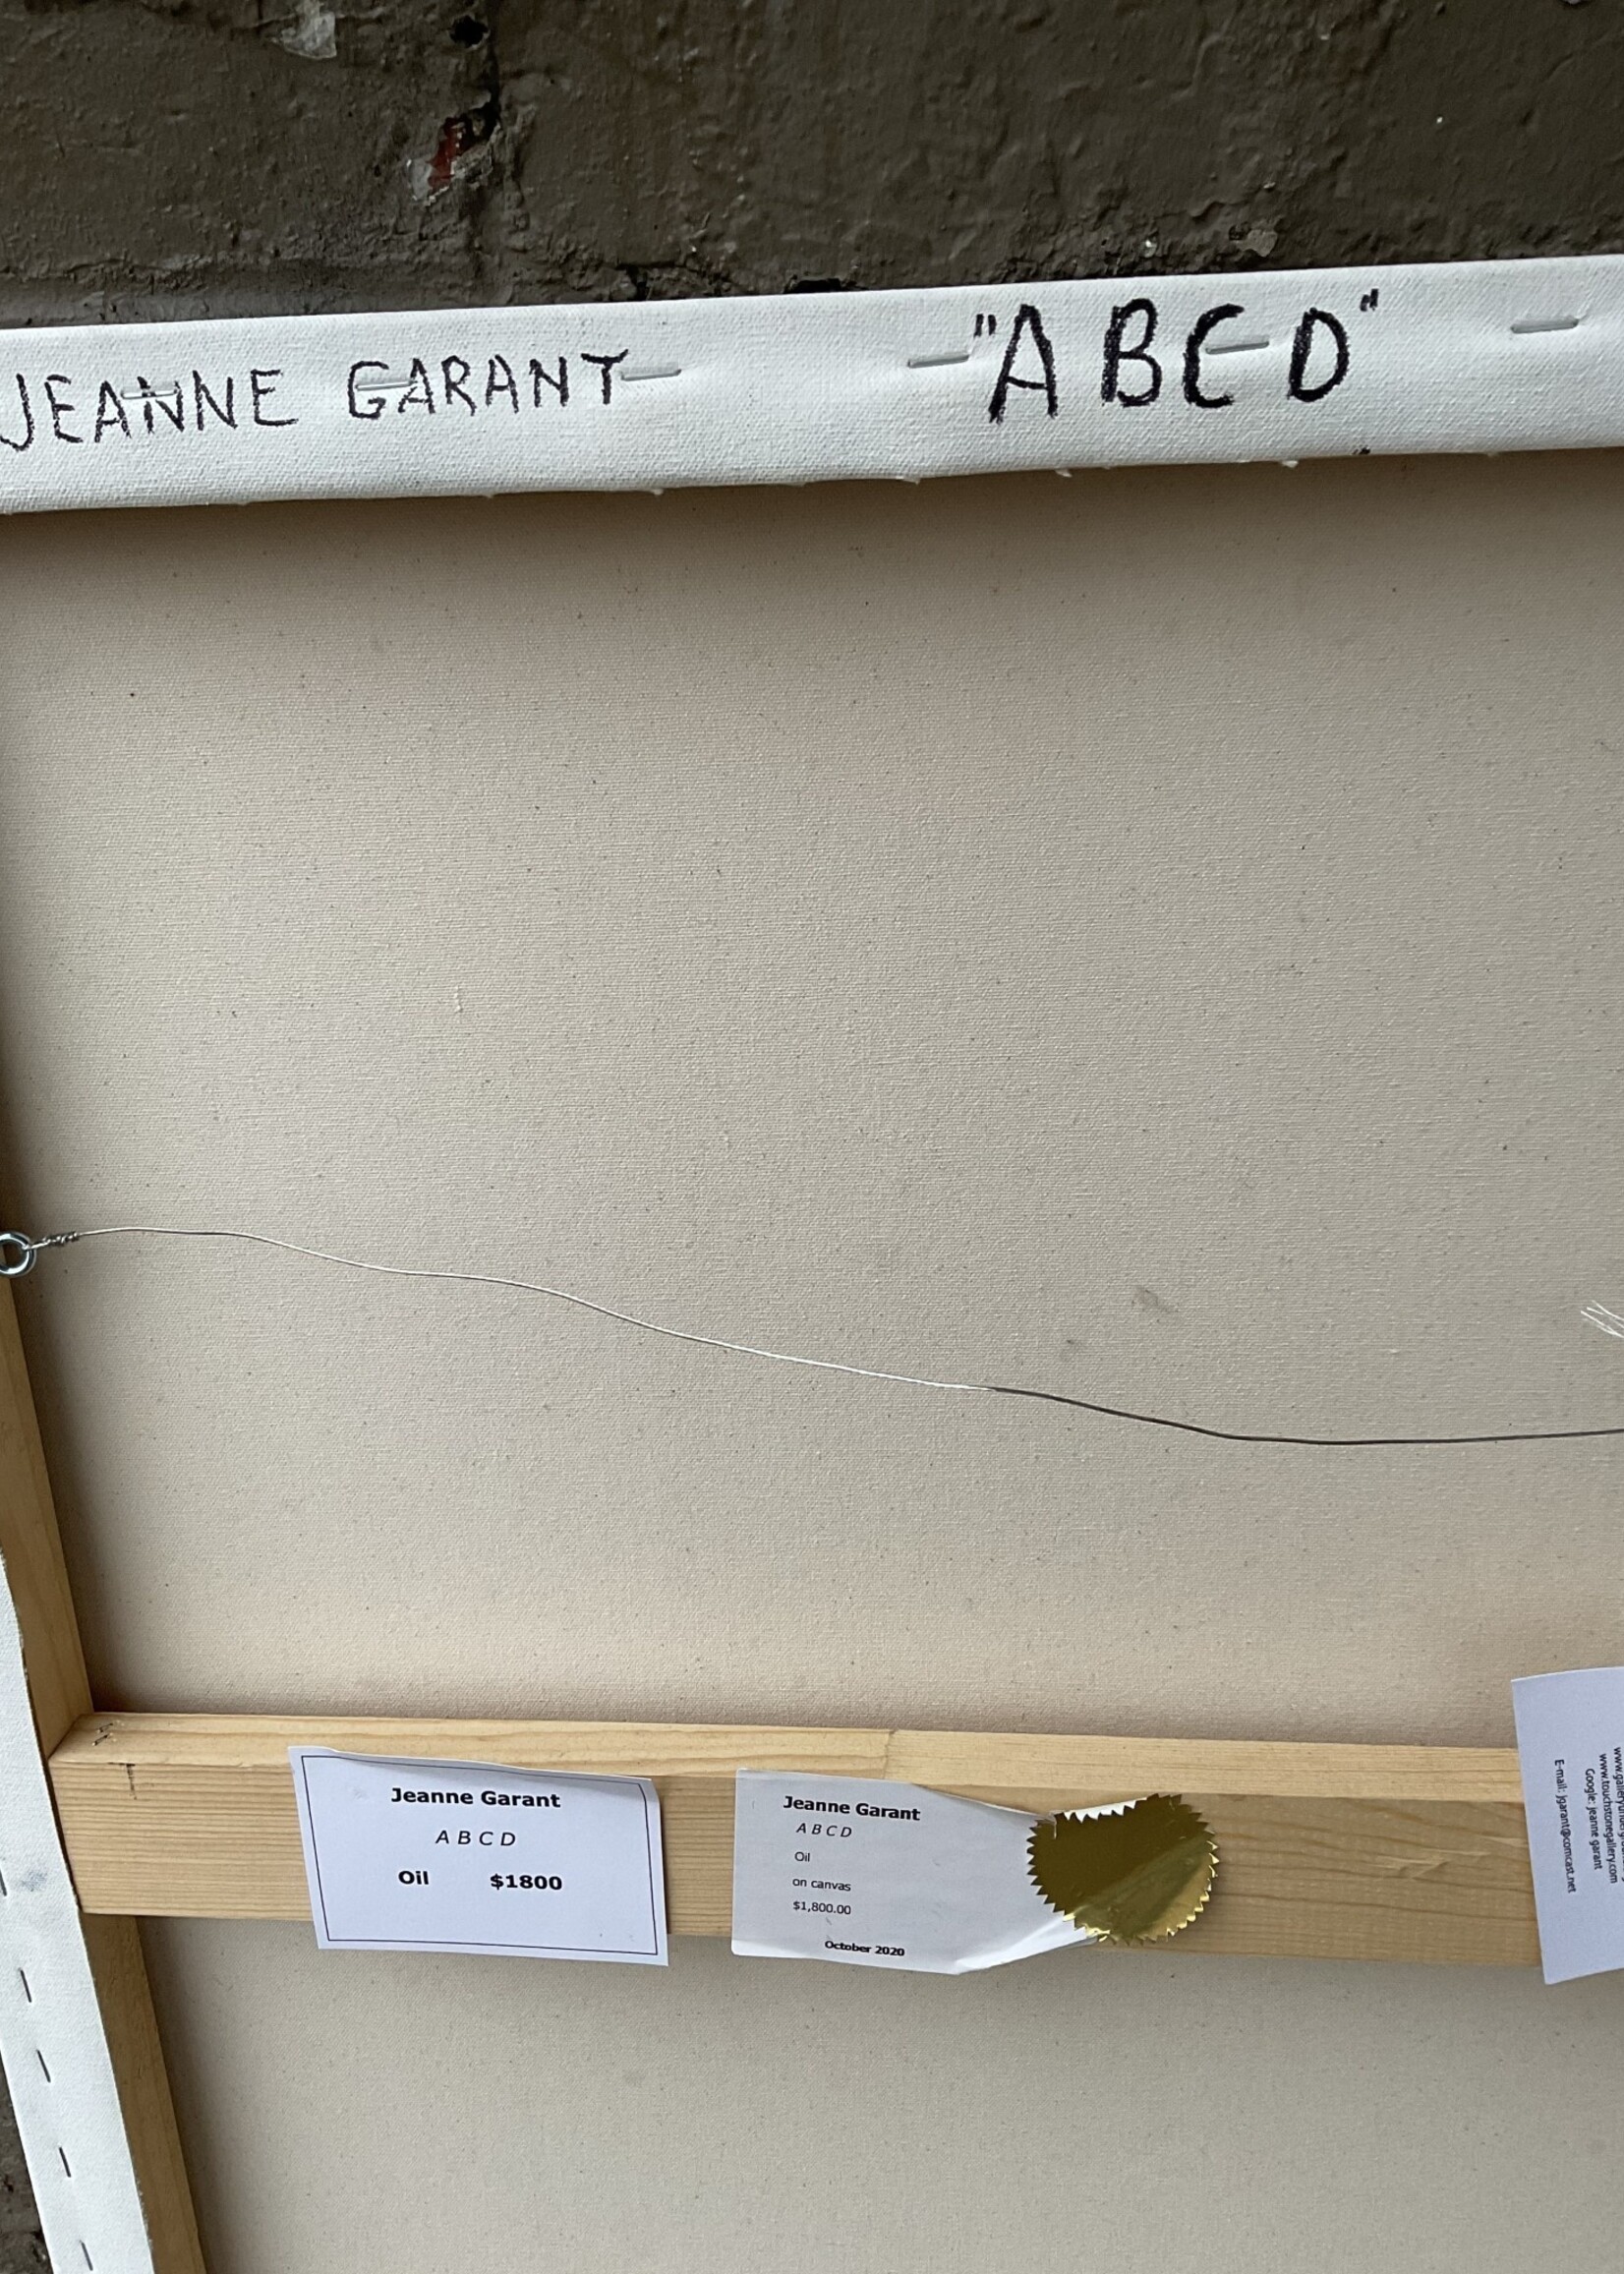 GOODWOOD "ABCD", Jeanne Garant